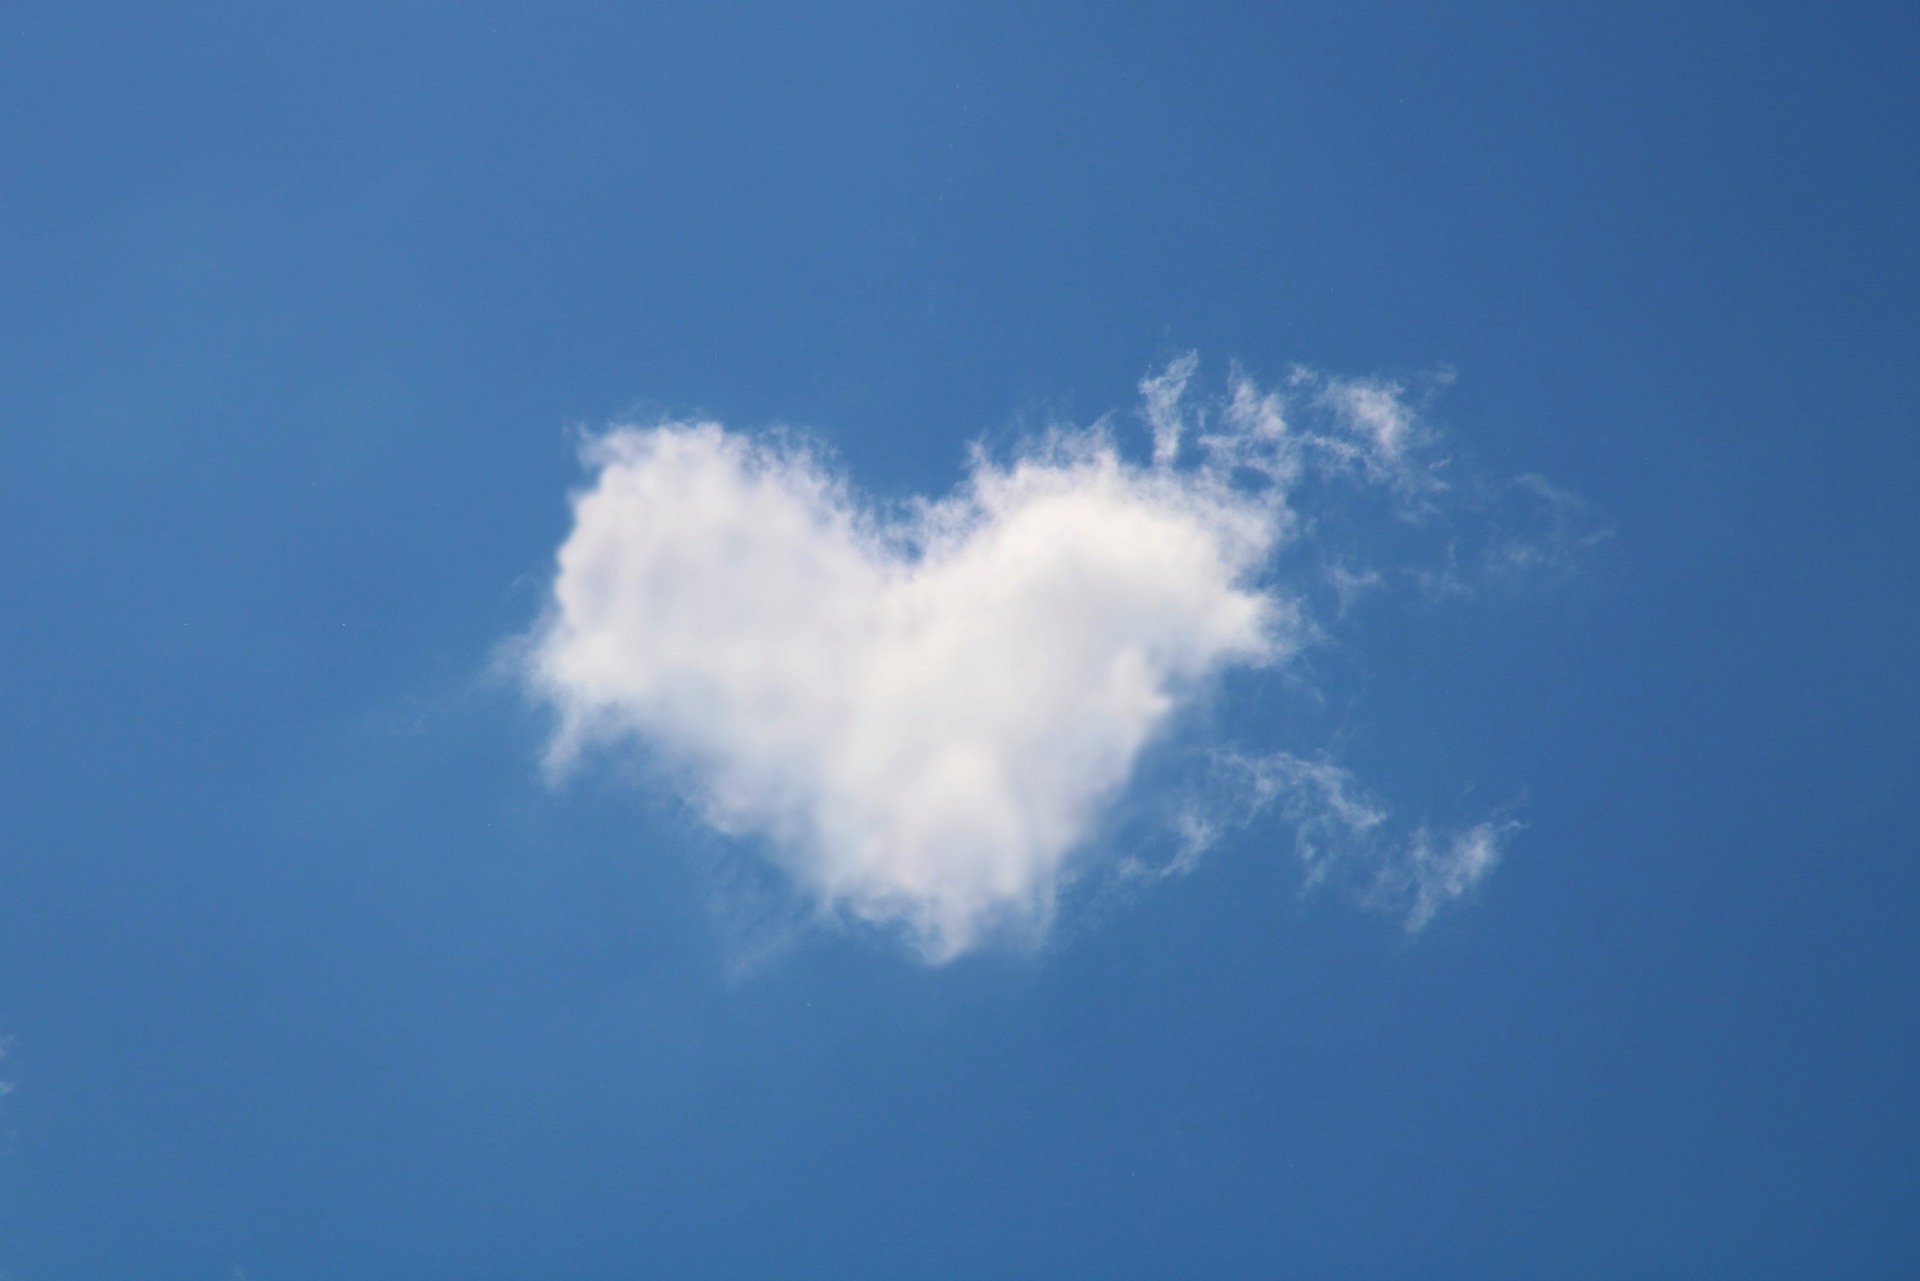 Nuage en forme de cœur représentatif de l'amour qui permet d'accompagner un proche pendant une épreuve de cancer